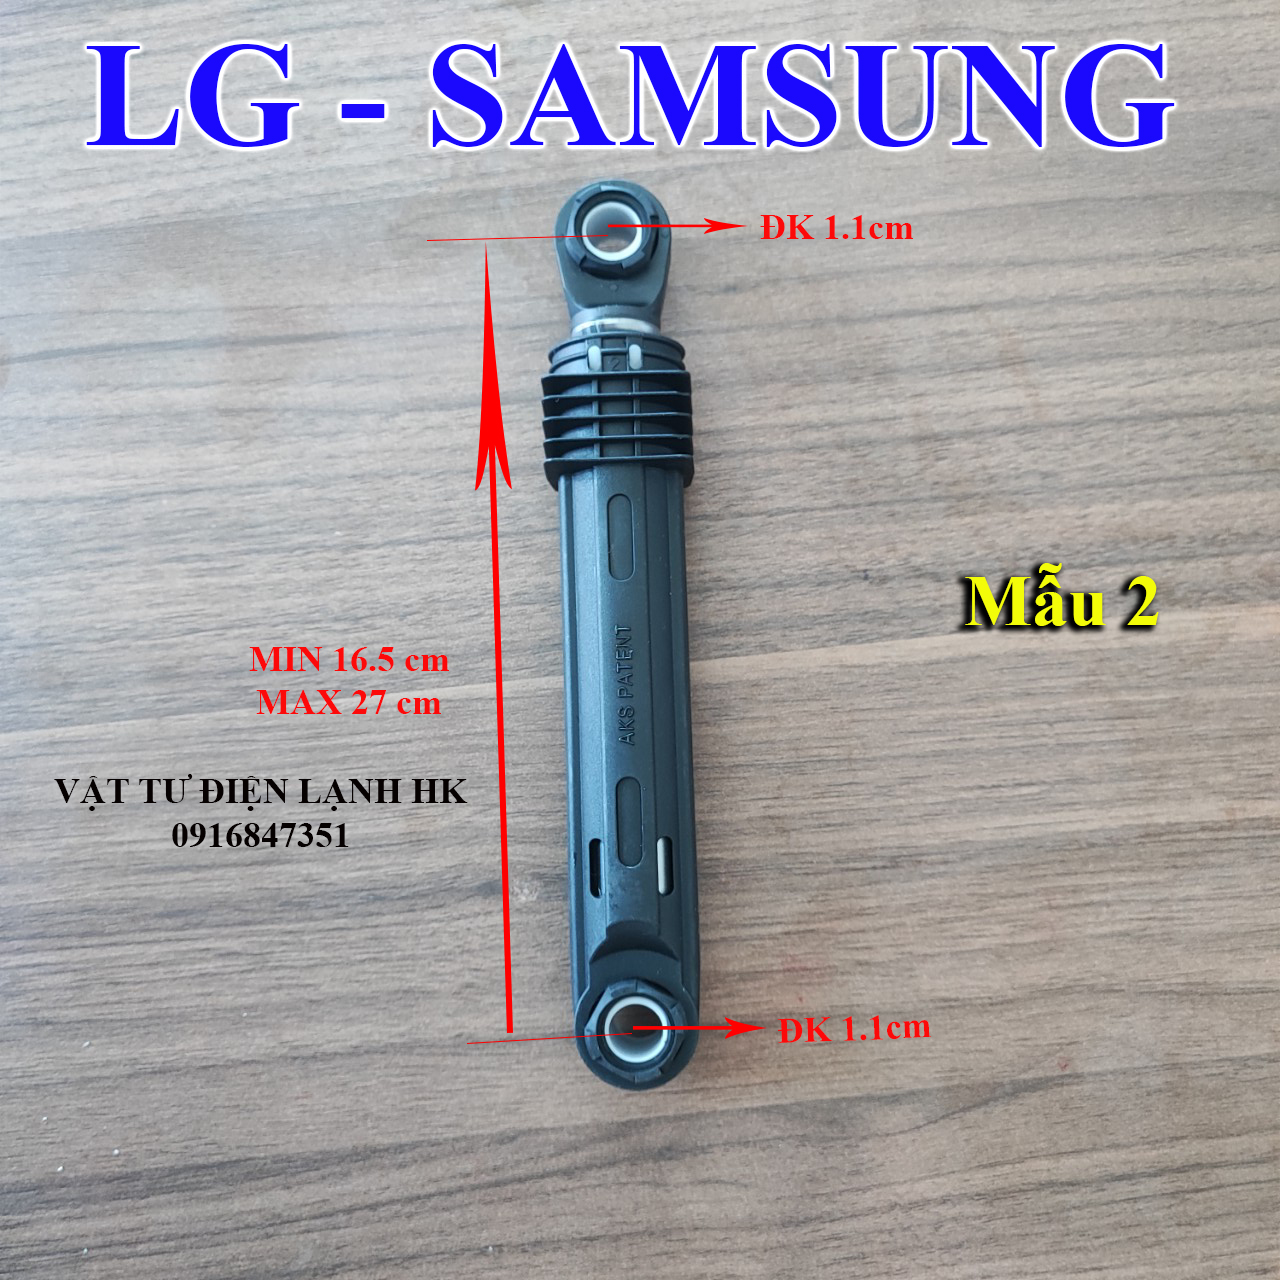 Tay nhún thụt giảm xóc dùng cho máy giặt LG Samsung - Chân chống rung sóc mg sámung